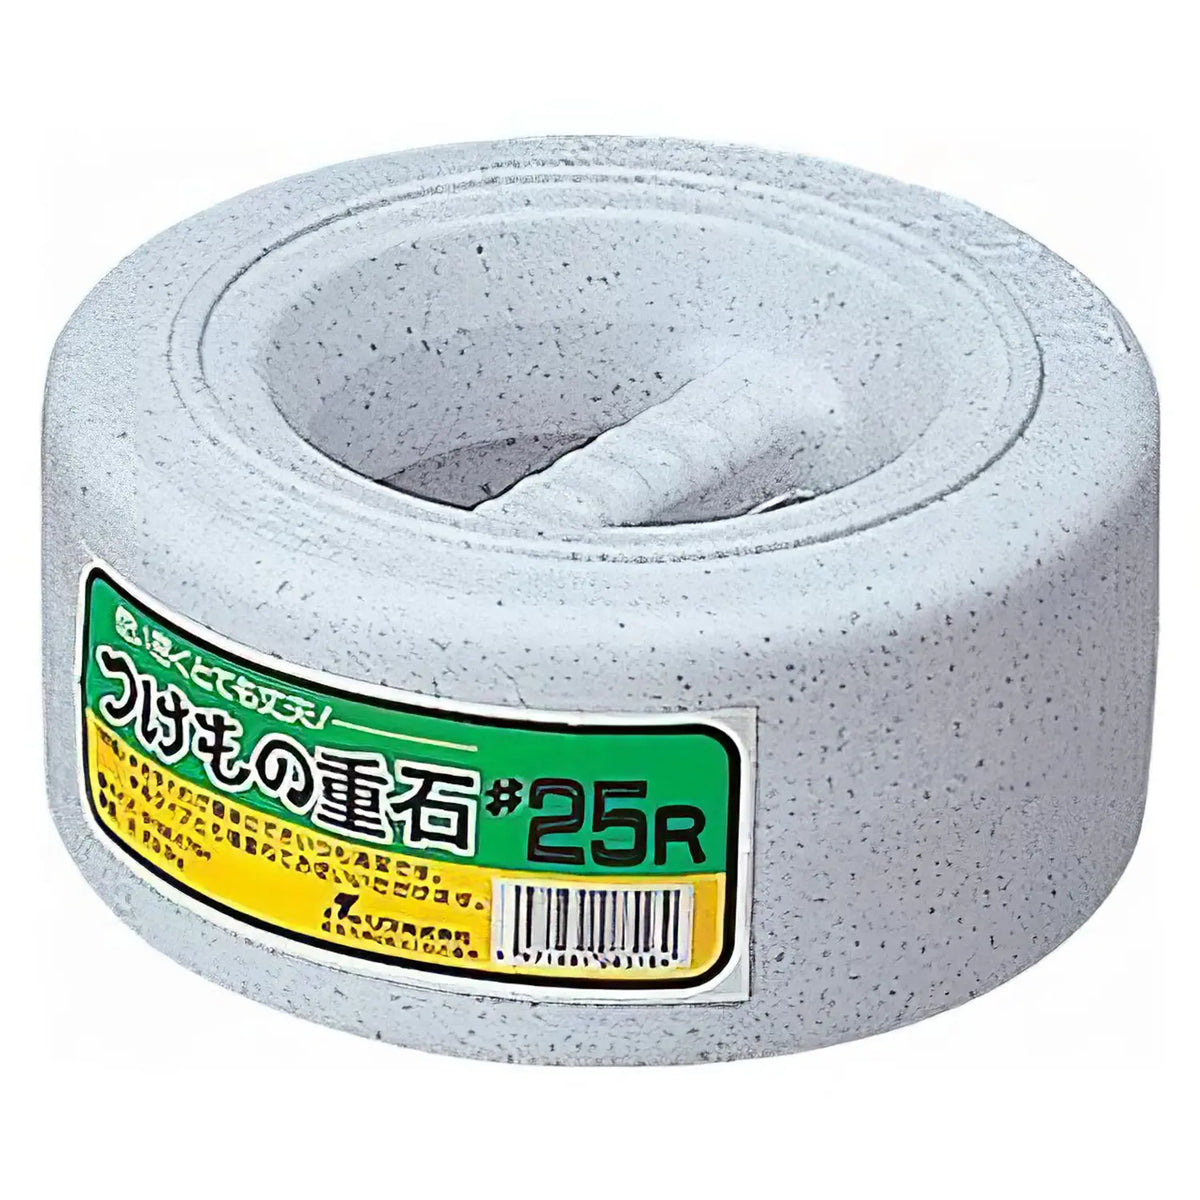 RISU Polyethylene Round Picklestone